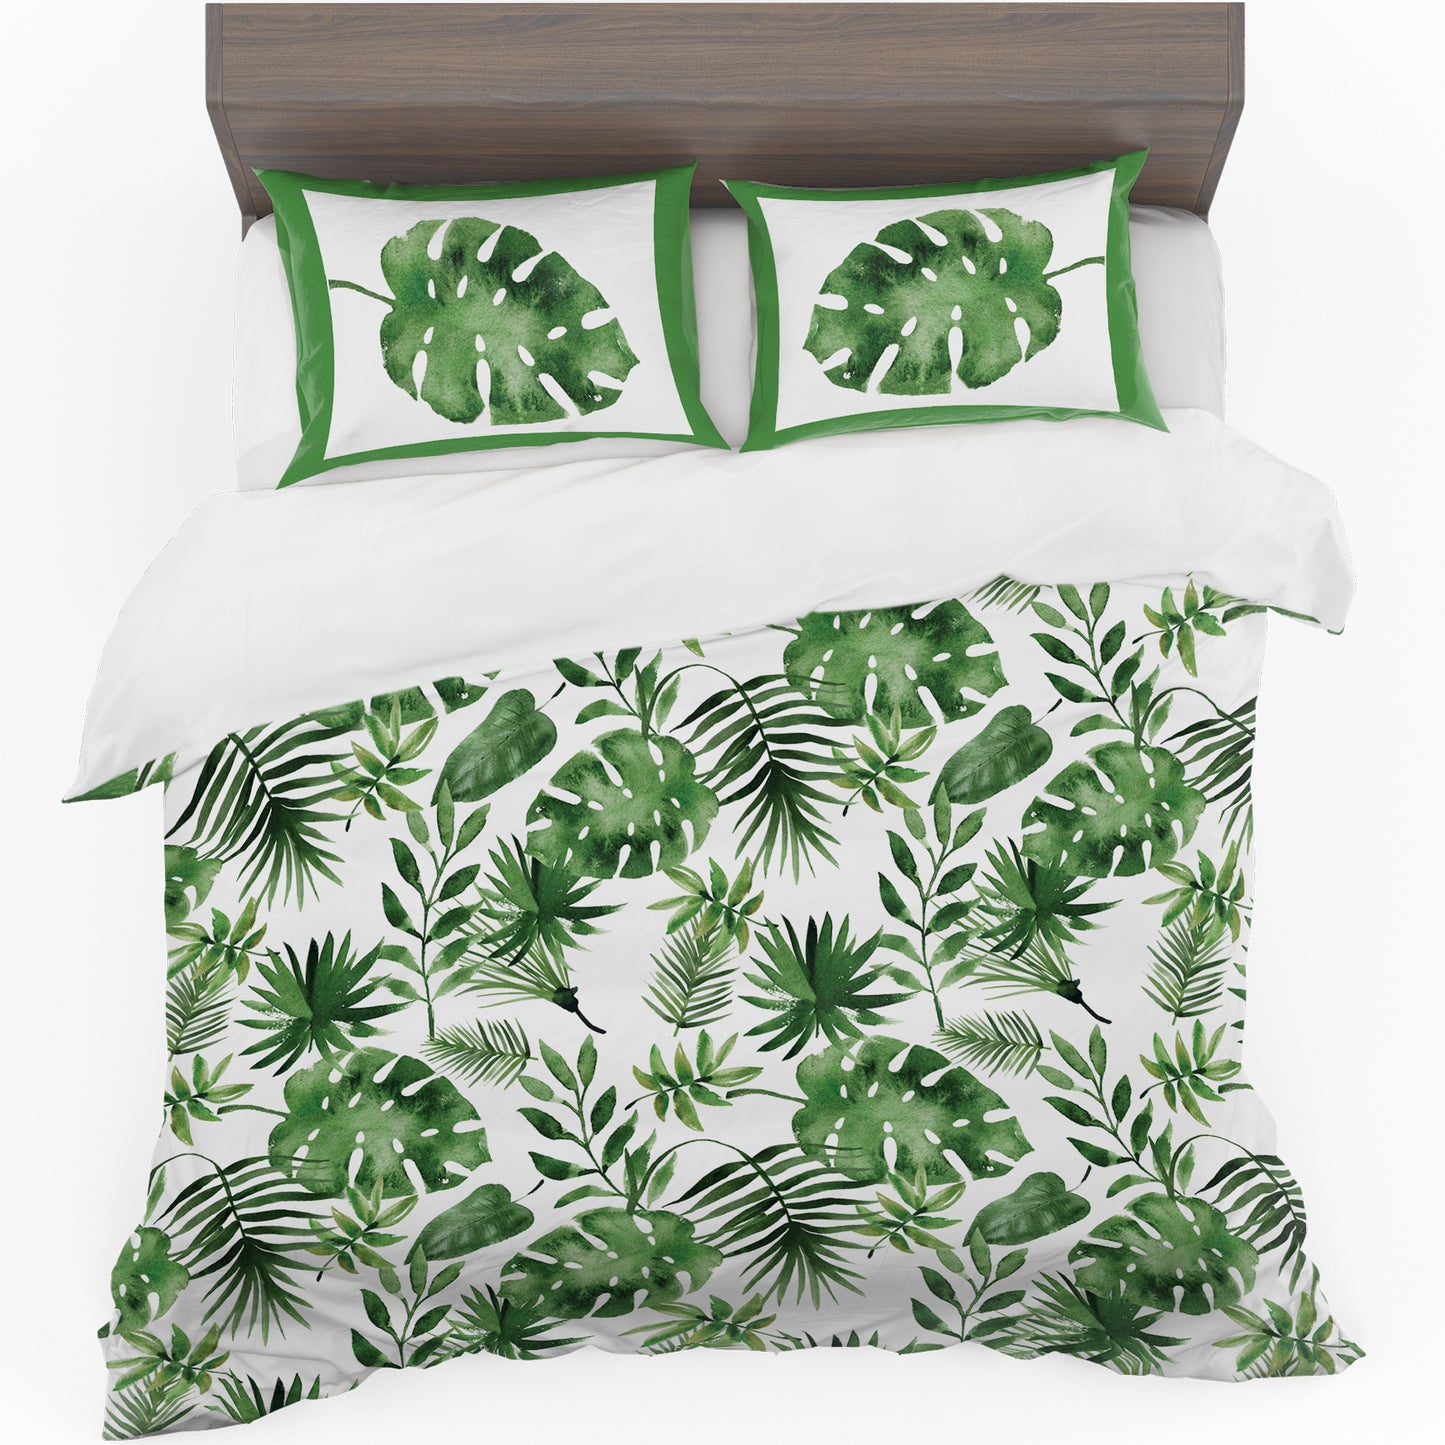 Tropical Green Leaves Duvet Cover Set